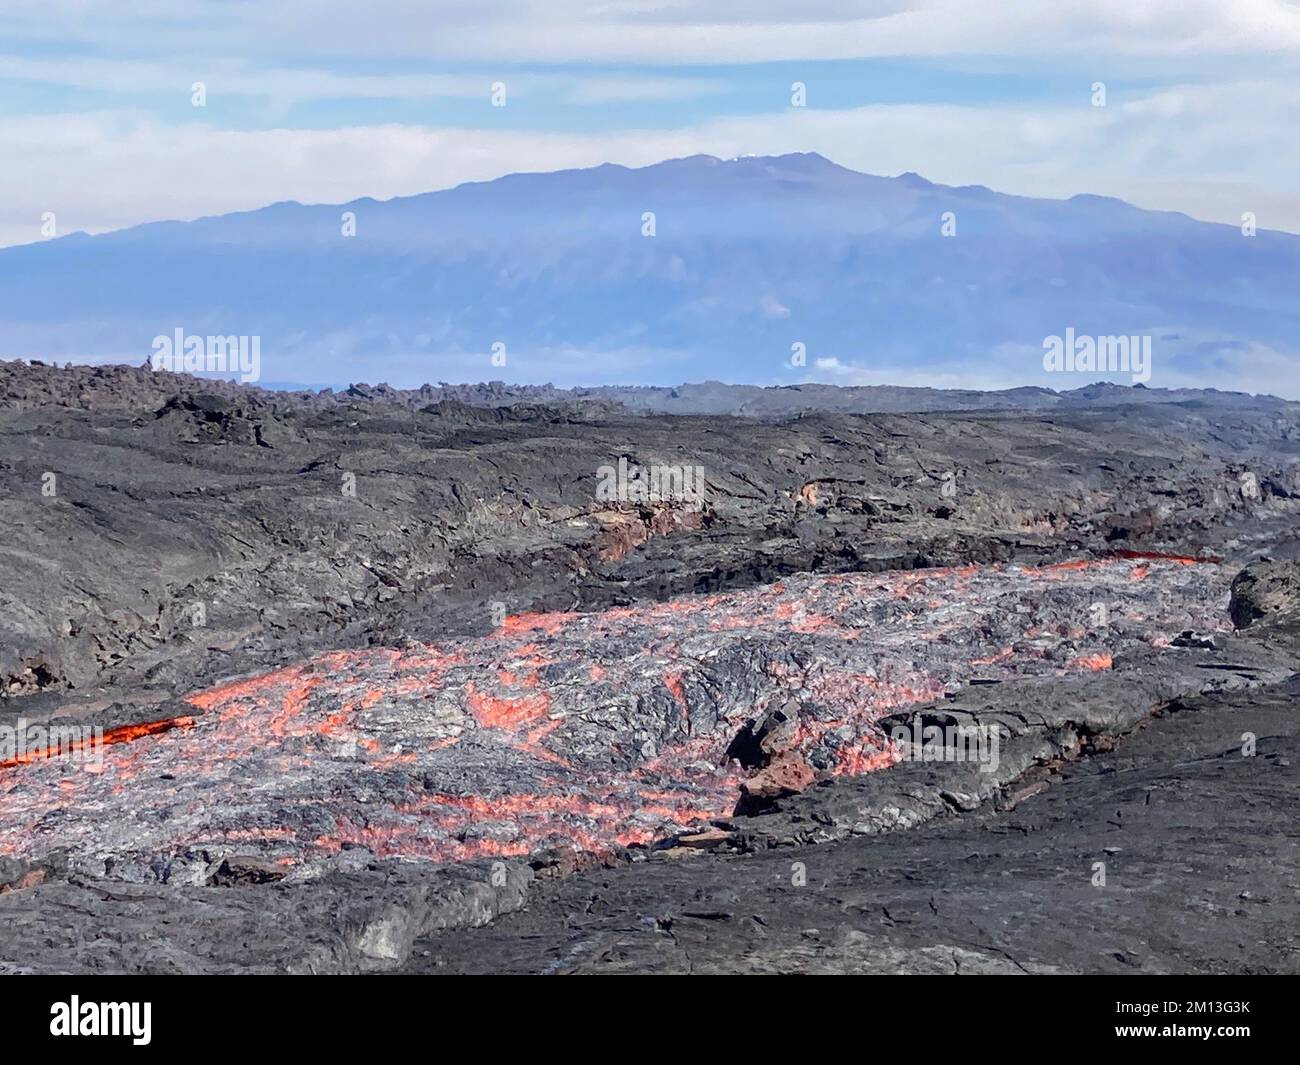 Mauna Loa, Hawaii, Stati Uniti. 7th Dec, 2022. Una vista del canale di lava che erutta dalla fessura 3 sulla zona nord-orientale del Rift di Mauna Loa. Vicino alla bocca, il canale di lava si muove a circa 26-36 piedi al secondo (8.2-11 metri al secondo). Più in discesa, l'ampio fronte del flusso di lava avanza più lentamente, ad una velocità media inferiore a 20 piedi (6 metri) all'ora. Immagine USGS di M. Patrick. Credit: USGS/ZUMA Press Wire Service/ZUMAPRESS.com/Alamy Live News Foto Stock